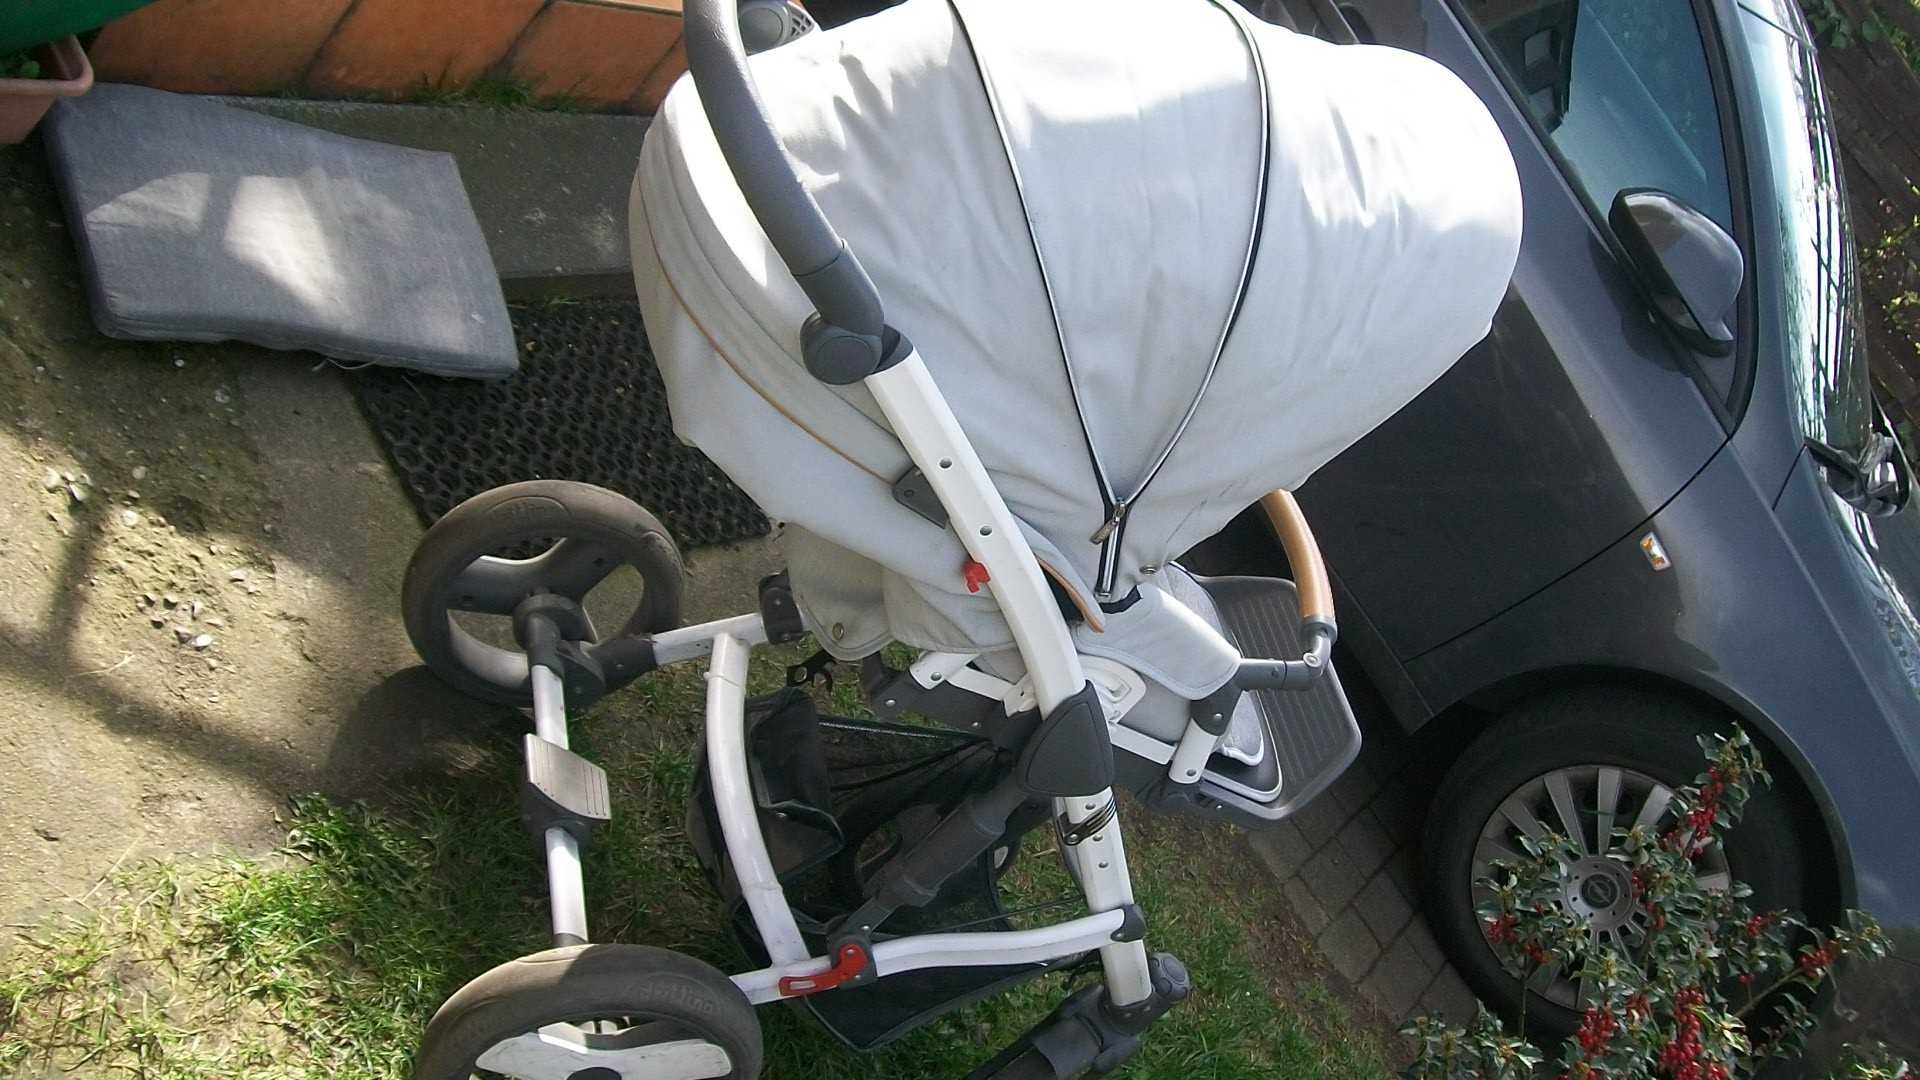 wózek dla dzieci spacerówka składana, różne modele